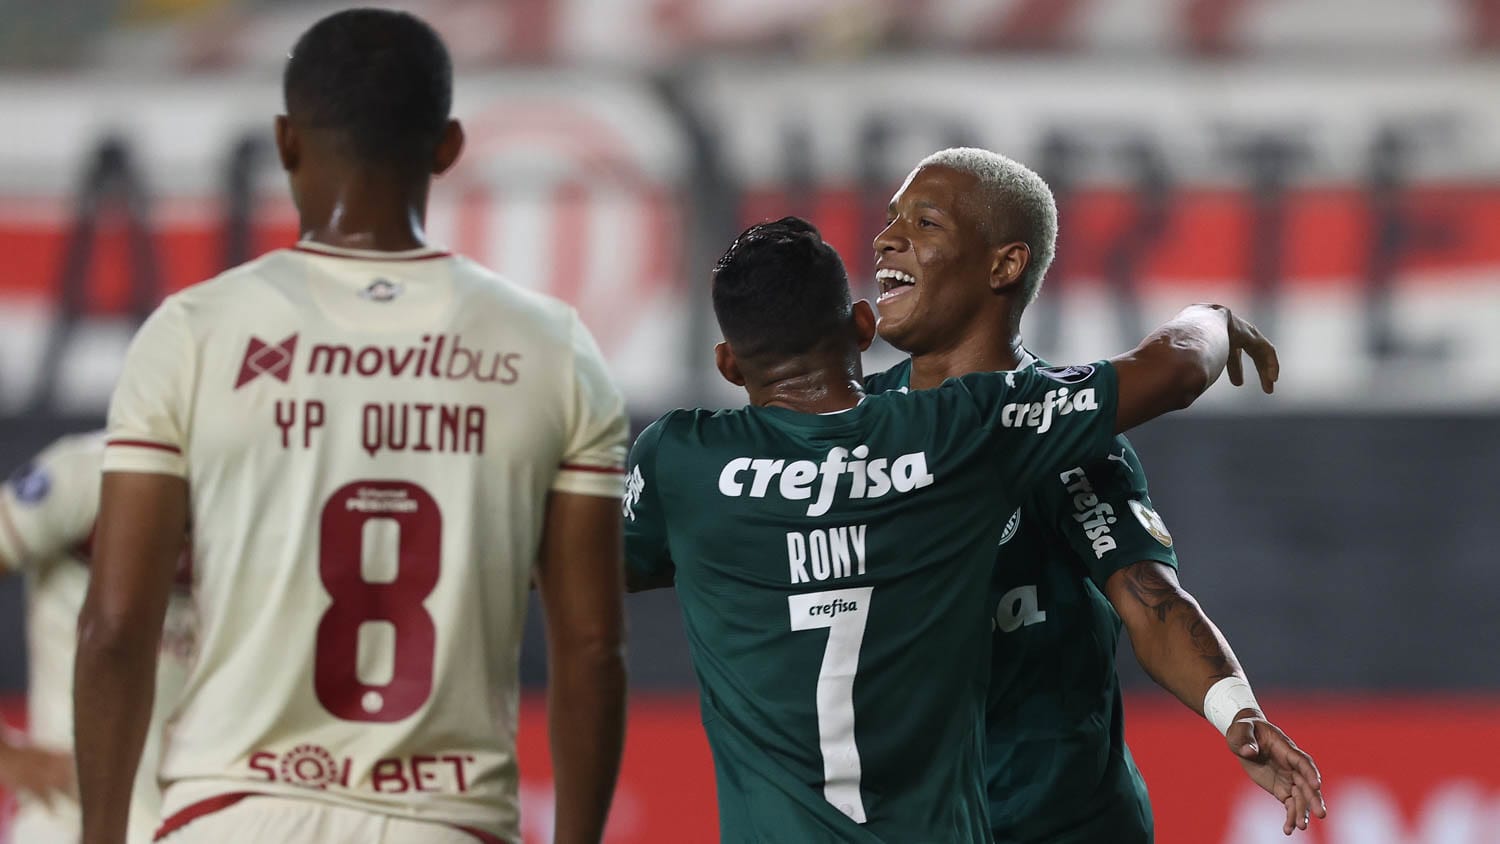 Palmeiras goleia Universitario e fica com segunda melhor campanha